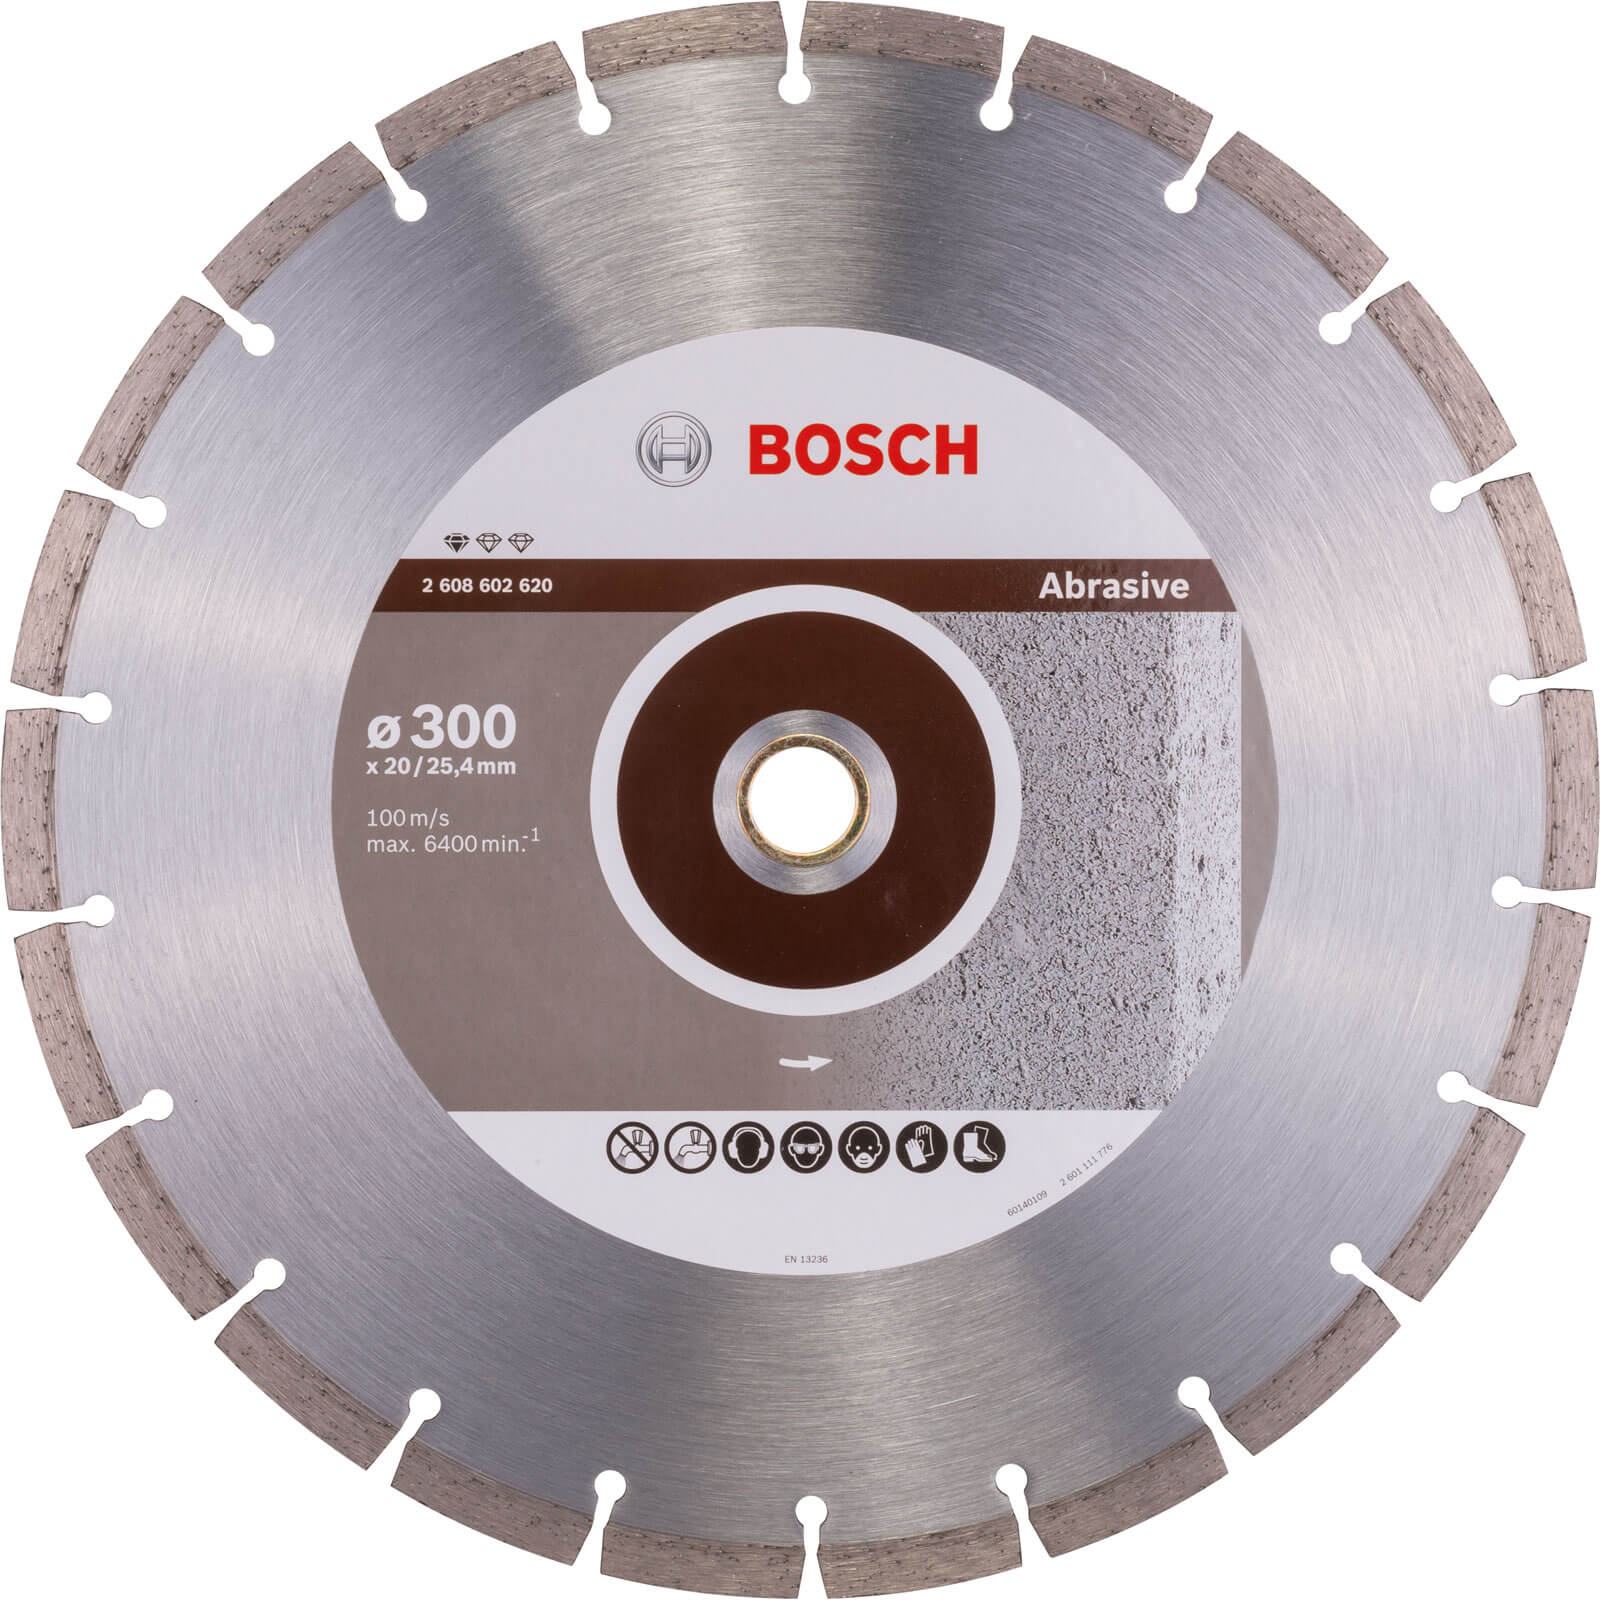 Photos - Cutting Disc Bosch Standard Diamond Disc for Abrasive Materials 300mm 2608602620 